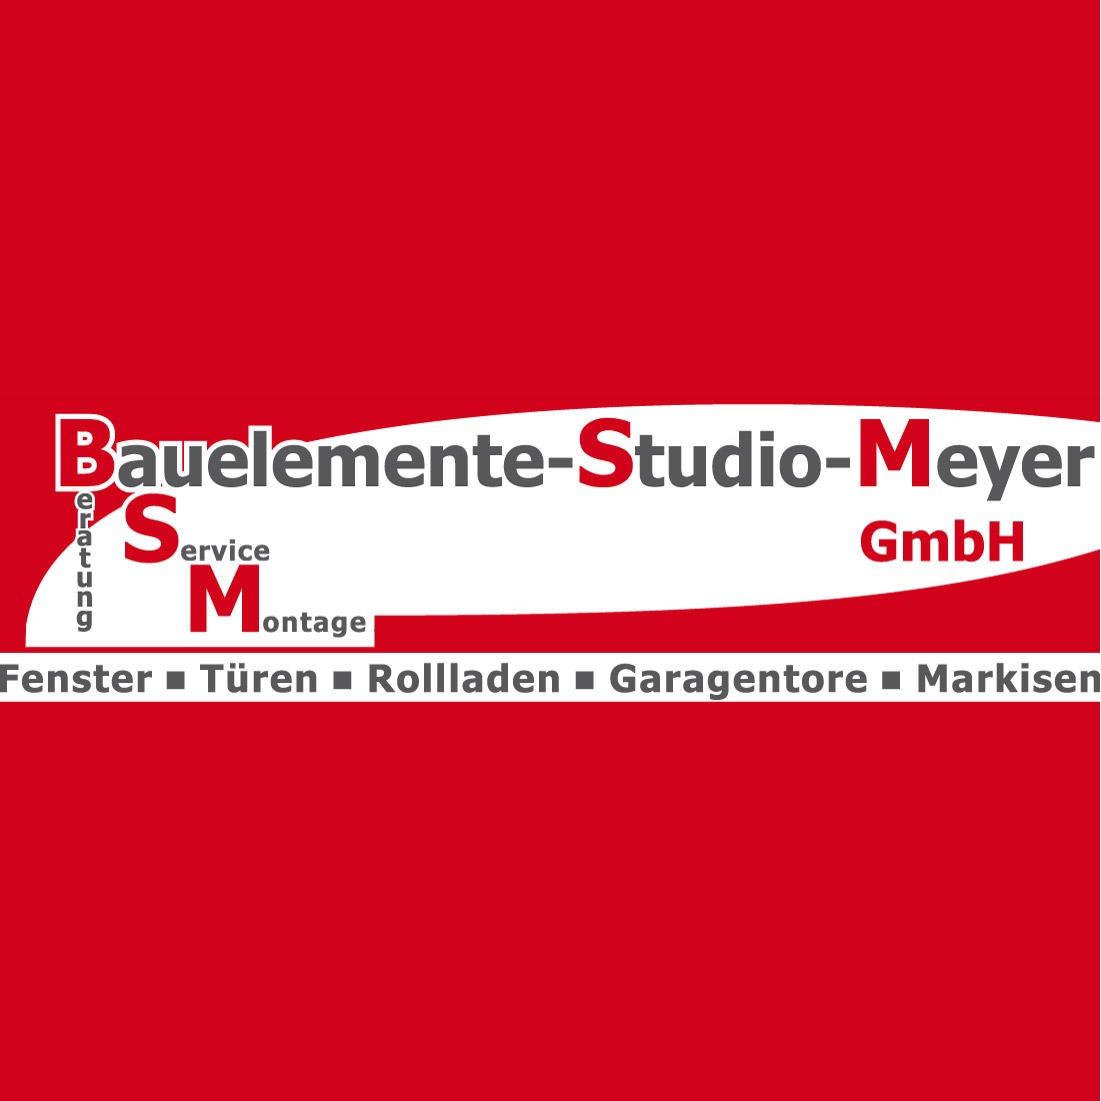 Bauelemente-Studio-Meyer GmbH  